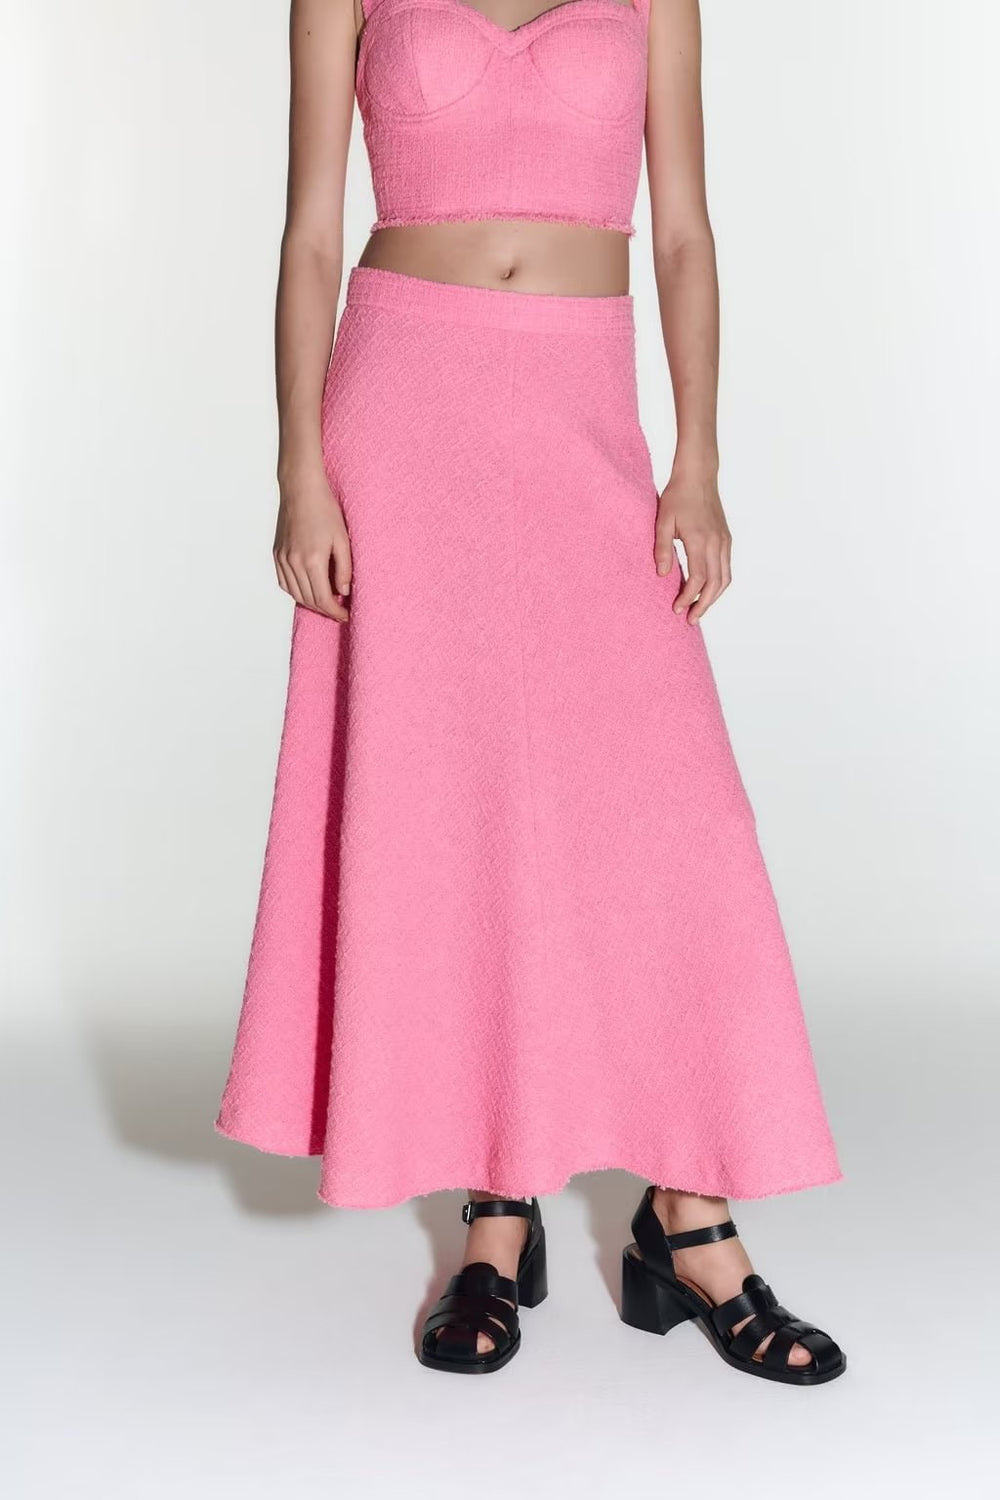 Summer High Waist Women Skirt Elegant Long Mid Length Skirt French Solid Skirt